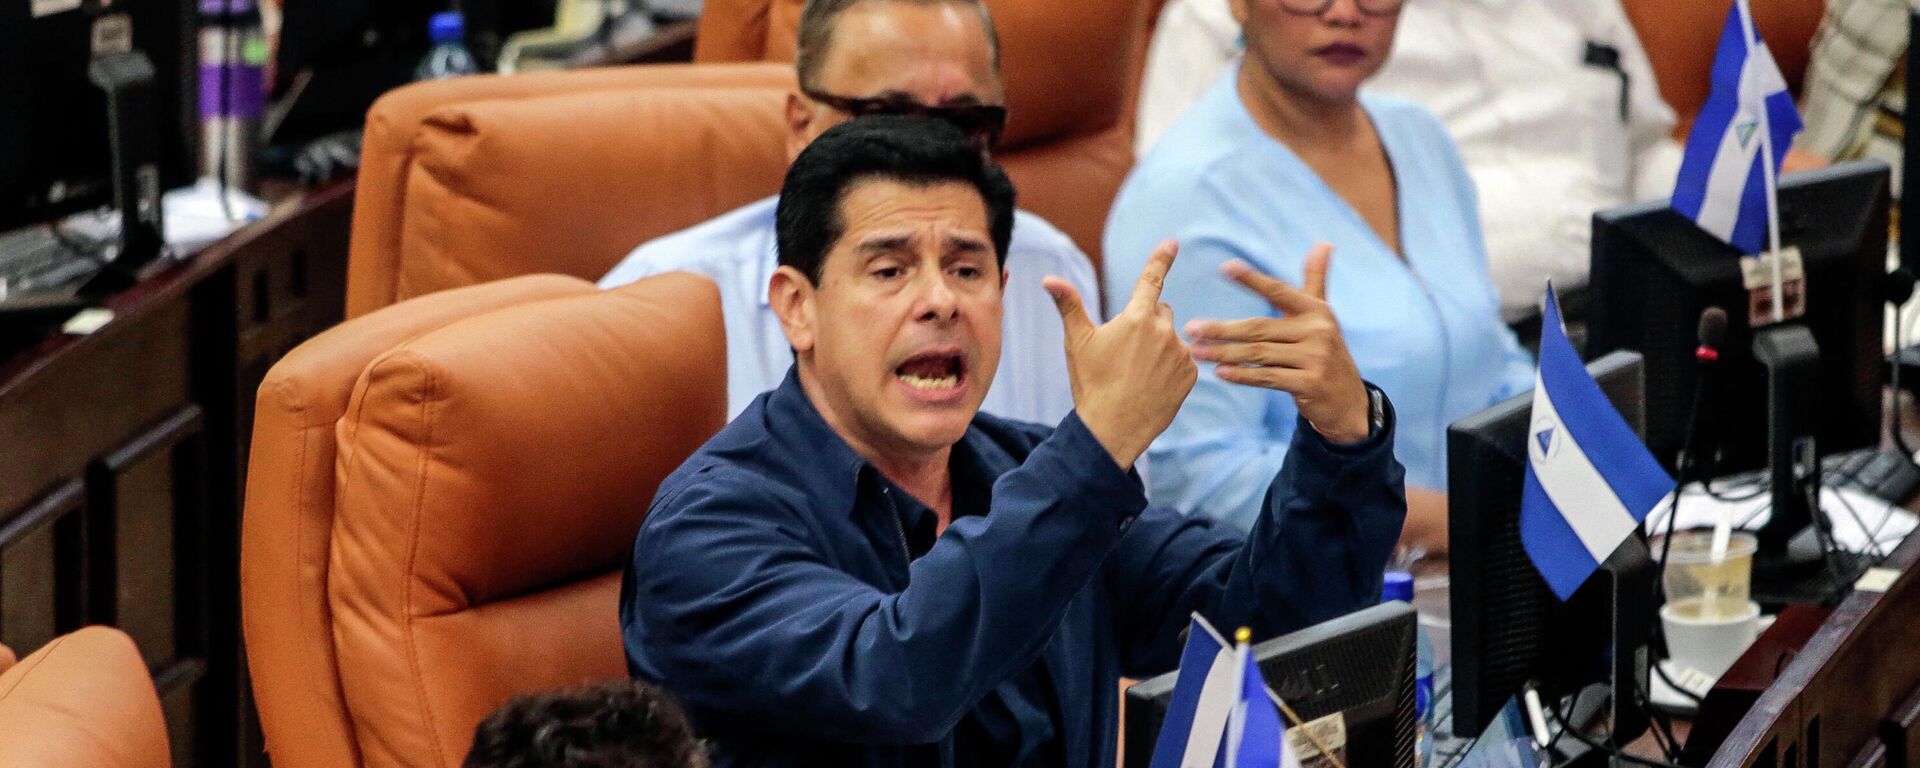 Wálmaro Gutiérrez, el diputado y presidente de la Comisión de Producción, Economía y Presupuesto de la Asamblea Nacional (Parlamento) de Nicaragua - Sputnik Mundo, 1920, 14.07.2021